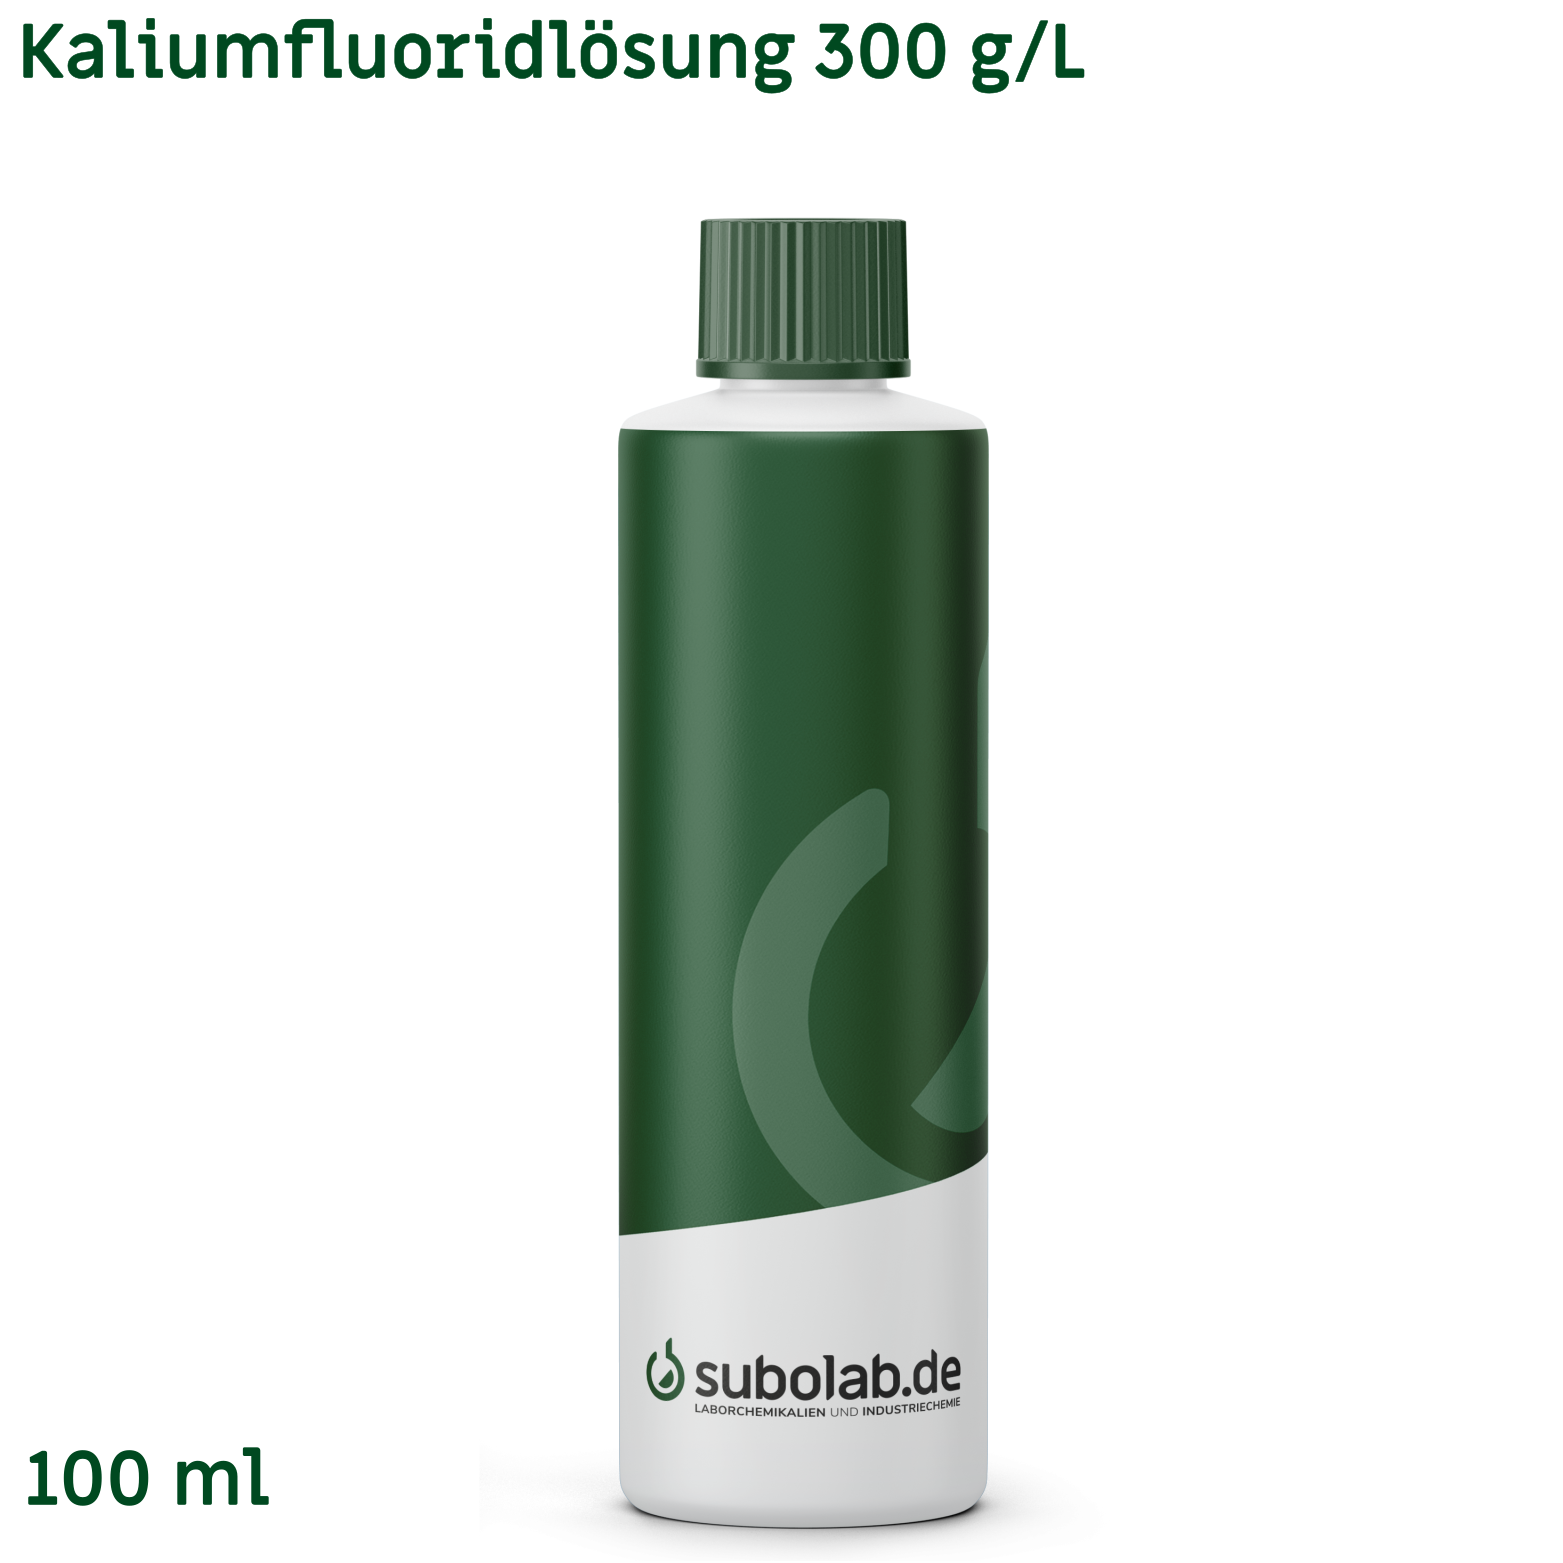 Bild von Kaliumfluoridlösung 300 g/L (100 ml)